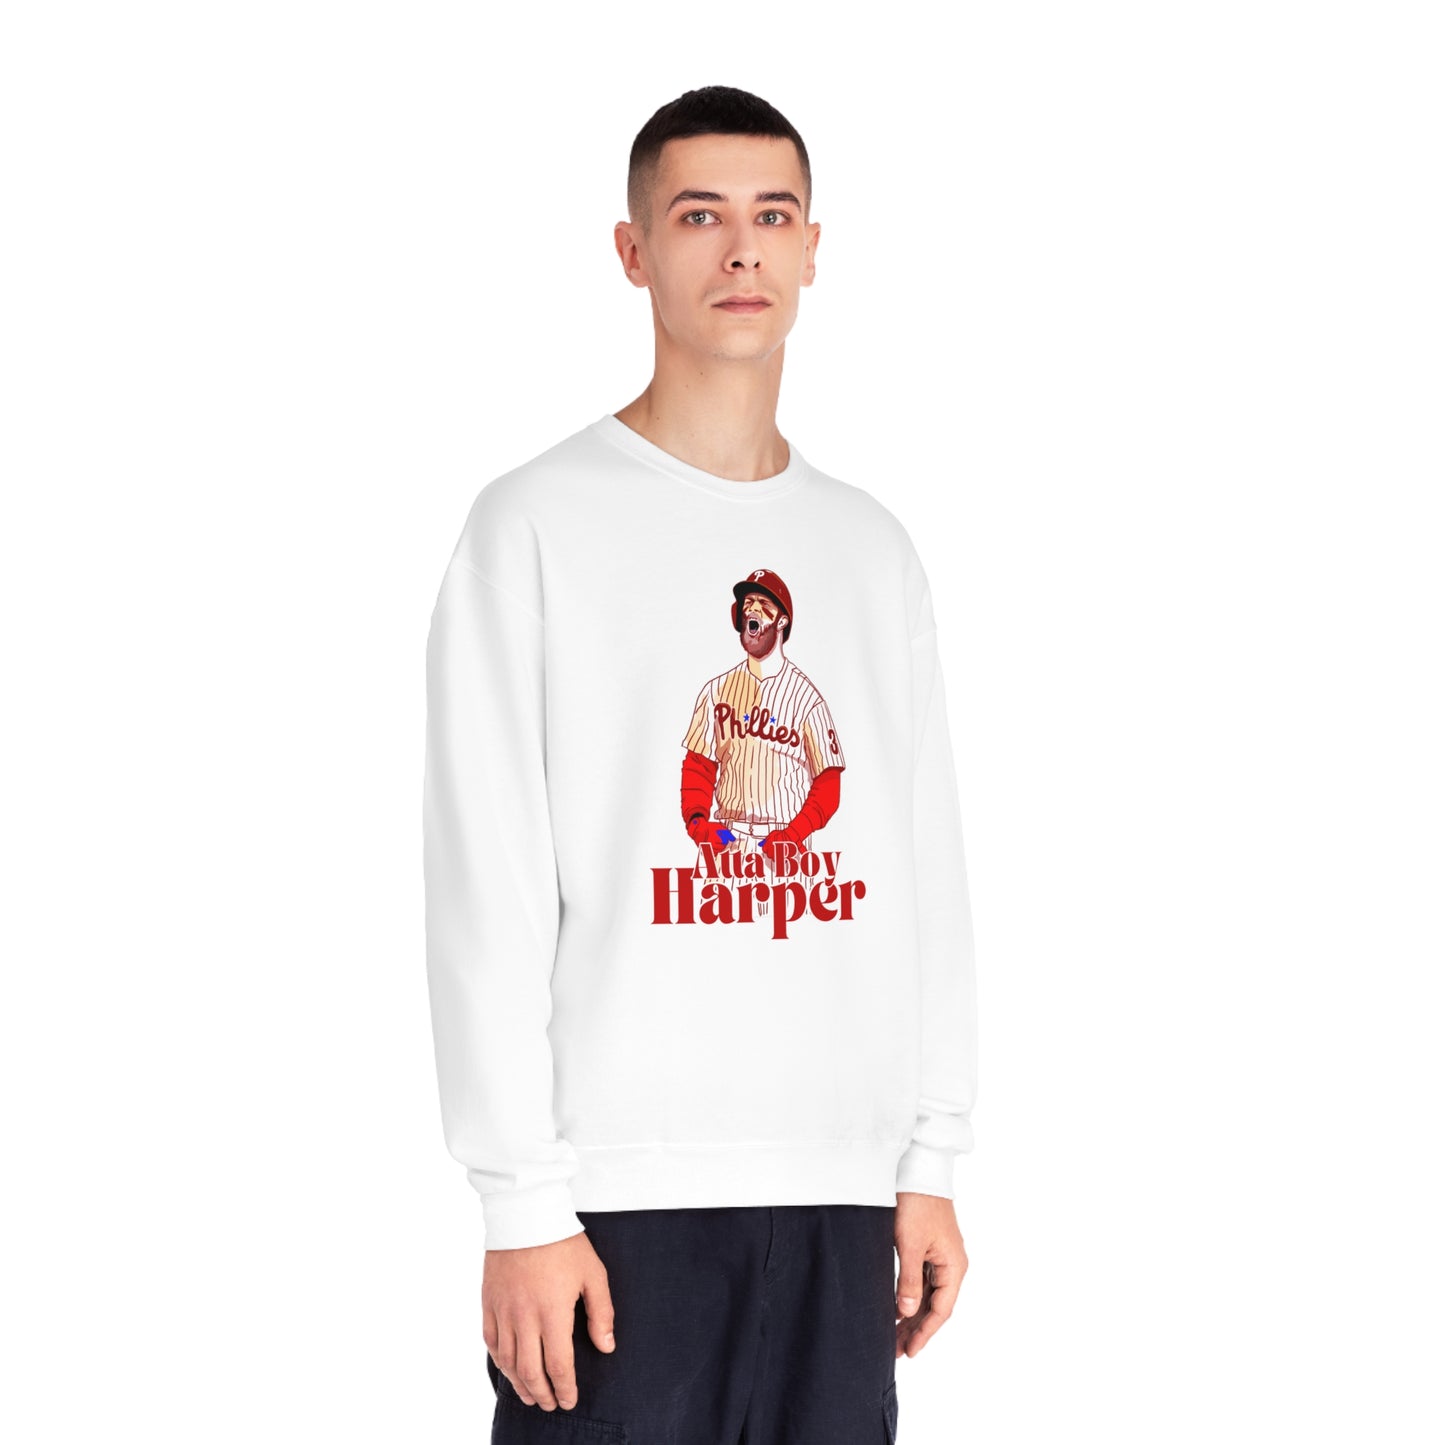 Atta Boy Harper - Unisex NuBlend® Crewneck Sweatshirt